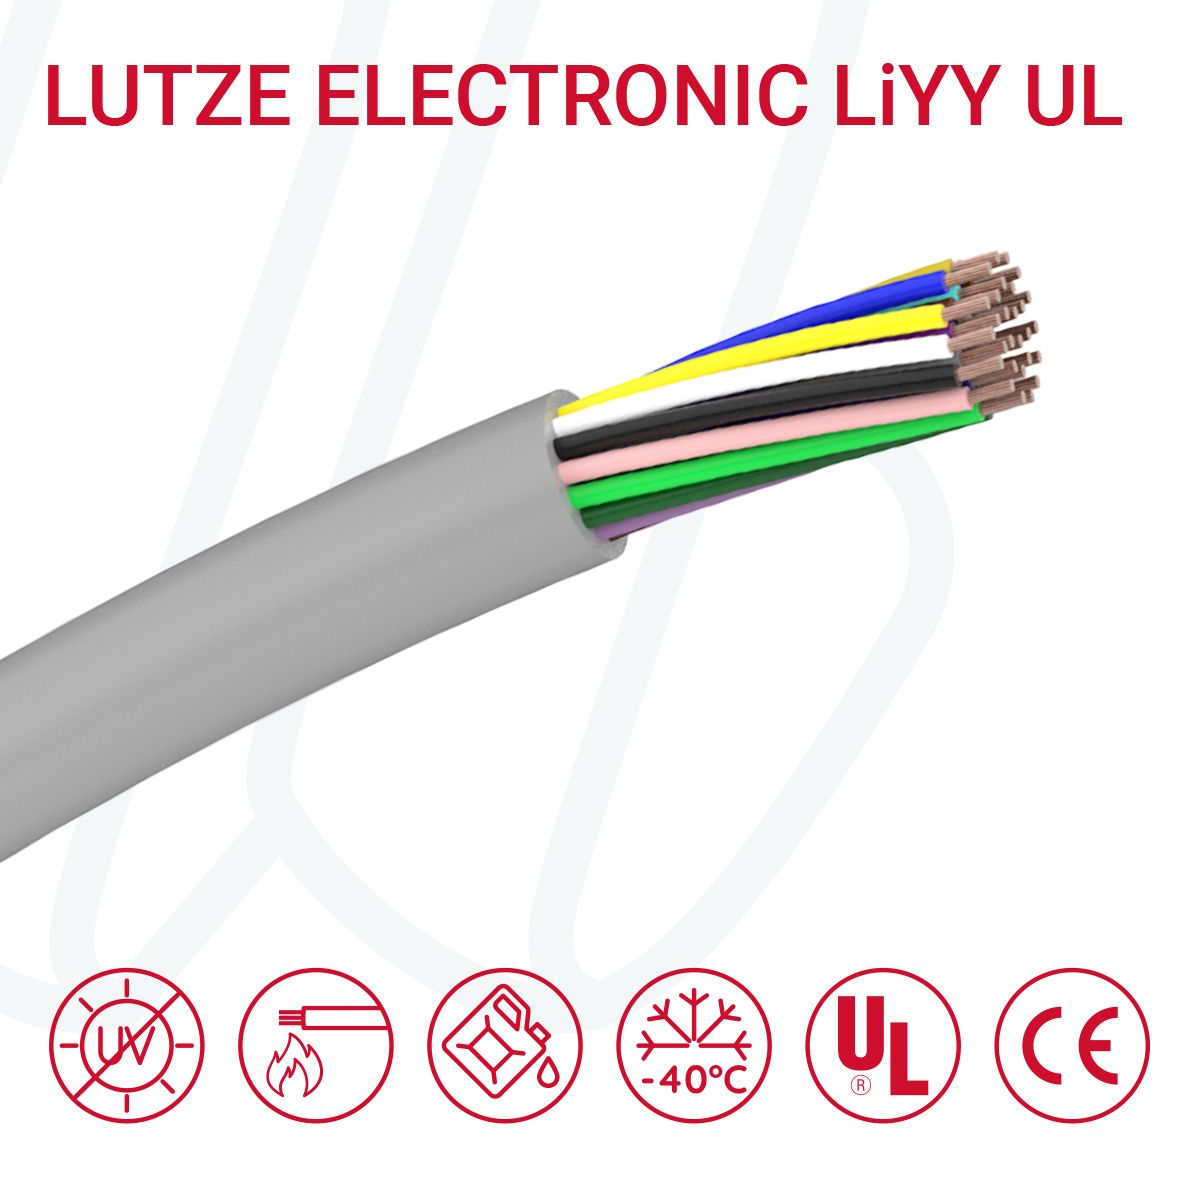 Кабель LUTZE ELECTRONIC LiYY 12X0.5 cUL сірий, 12, 0.5